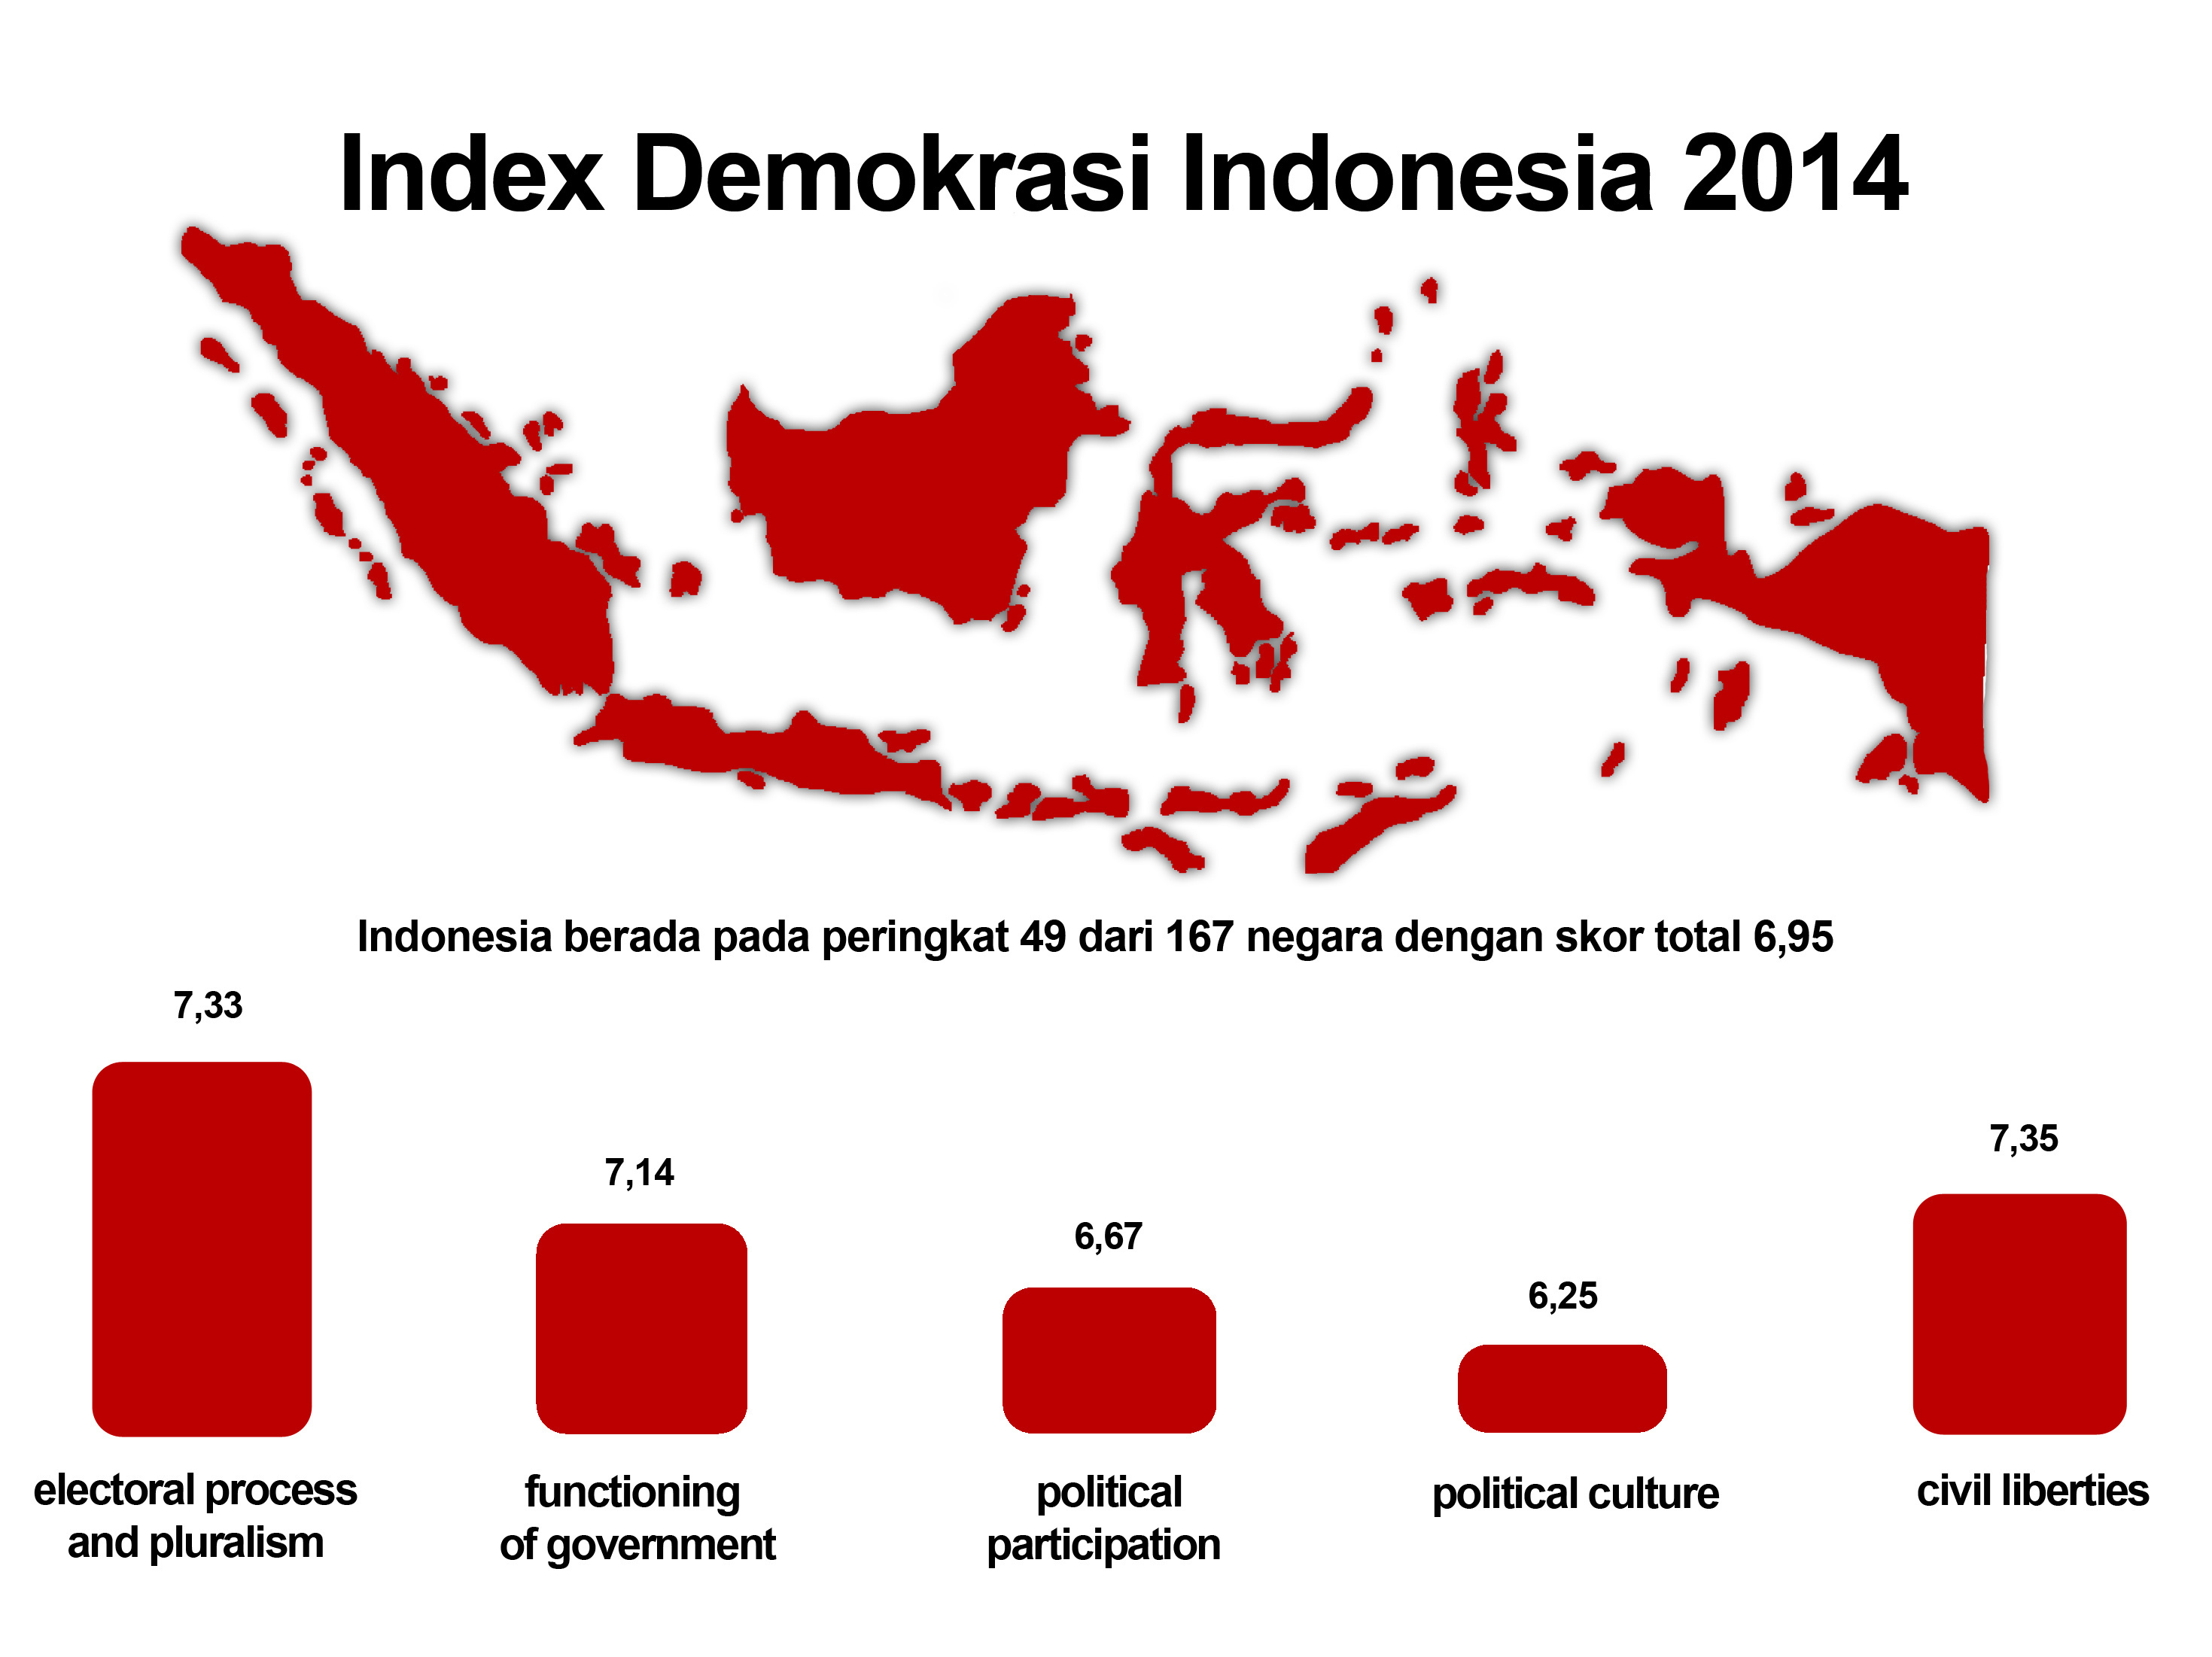 Sementara menurut Pers Freedom Index yang disusun oleh Reporters Without Border RWB pada 2015 Indonesia berada di peringkat 138 dari 180 negara indeks